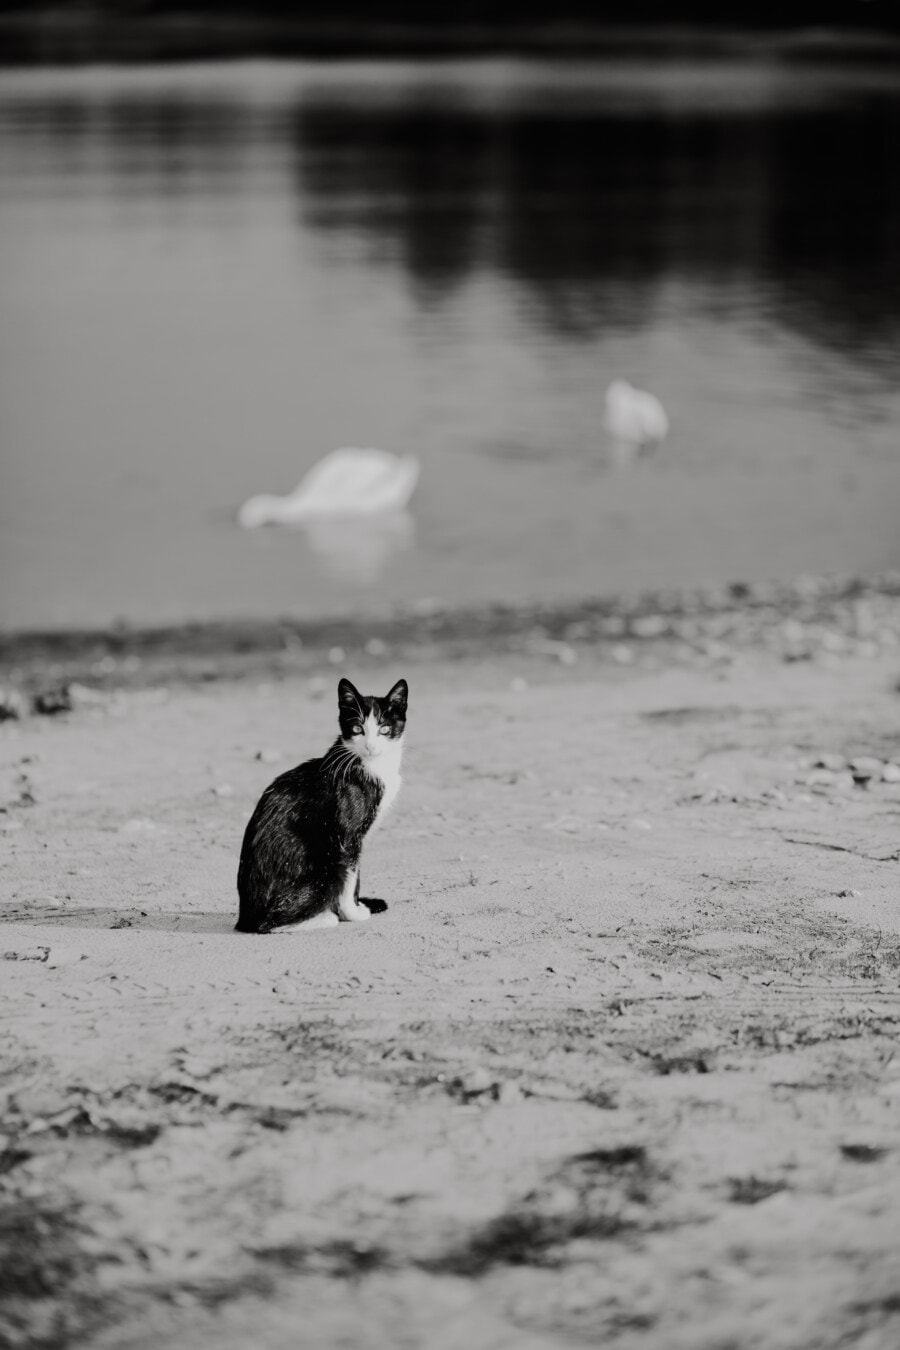 siyah ve beyaz, gri, tek renkli, nehir kıyısı, yerli kedi, kum, plaj, Beachfront, su, hayvan